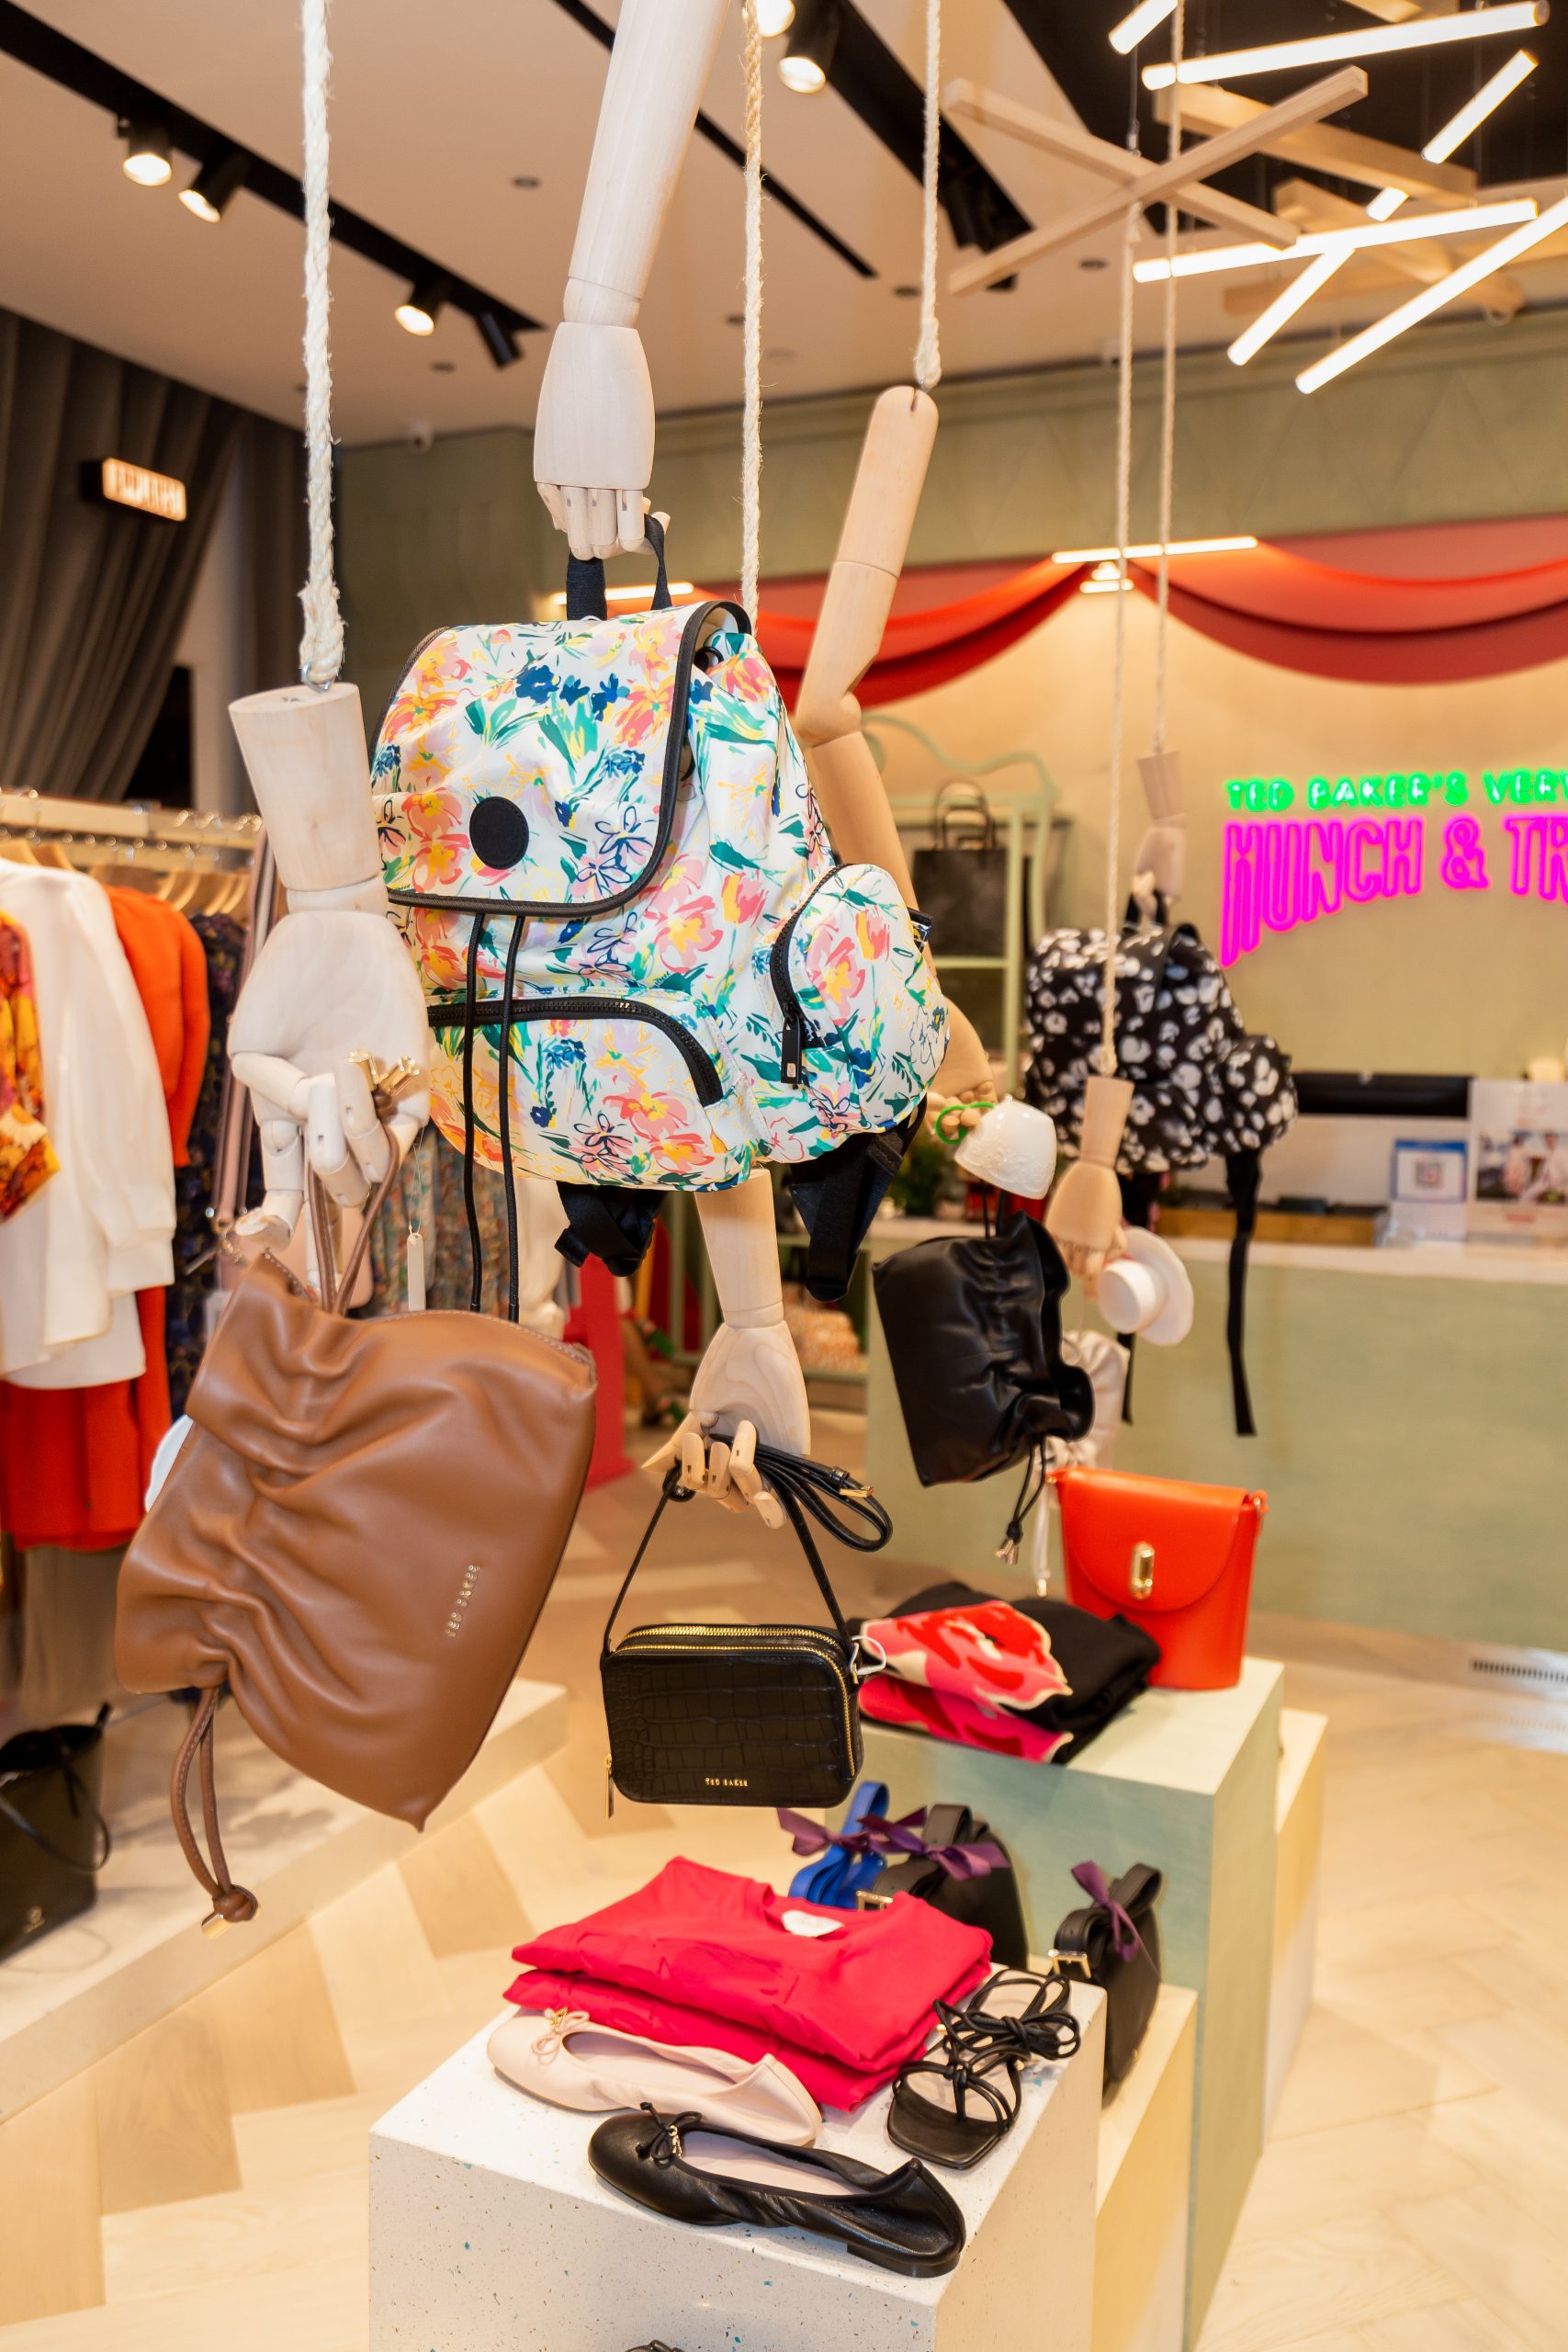 Harper's Bazaar_Ted Baker khai trương cửa hàng ở Vincom Đồng Khởi_11